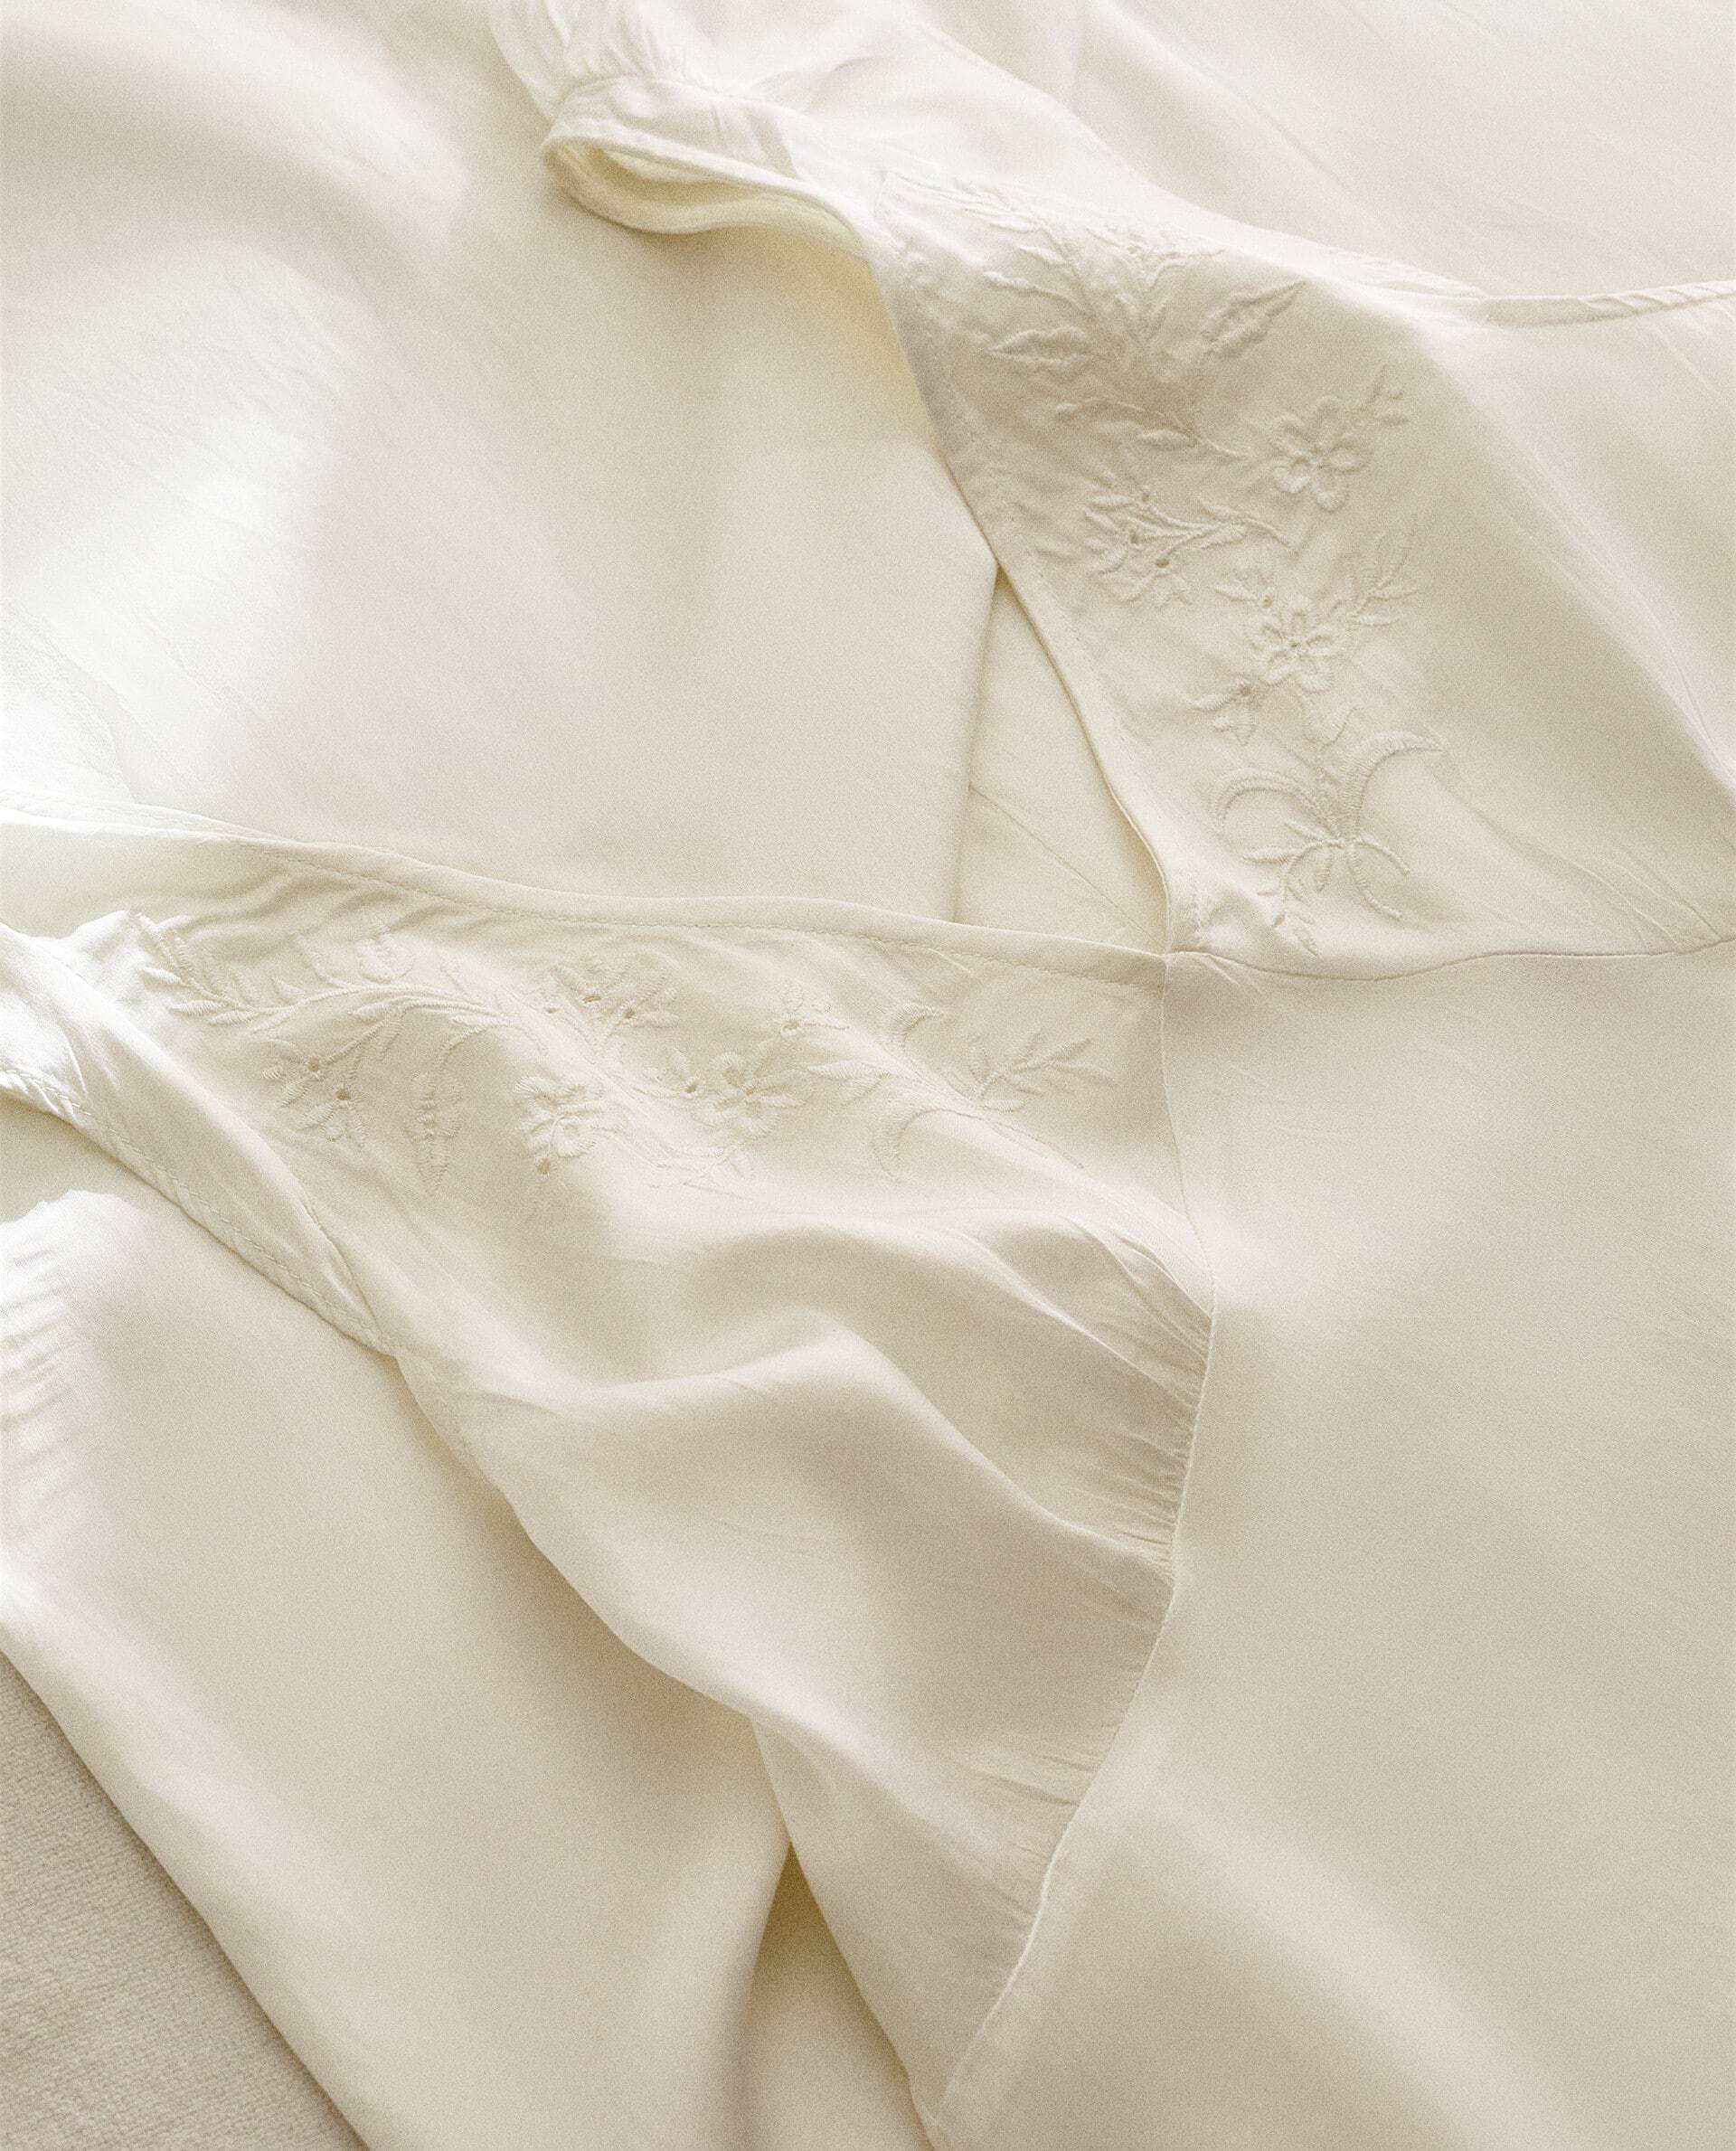 Elige camisones de seda o algodón para dormir bien, el truco de Marie Kondo. Este es de satén de algodón y puedes encontrarlo en de Zara Home.